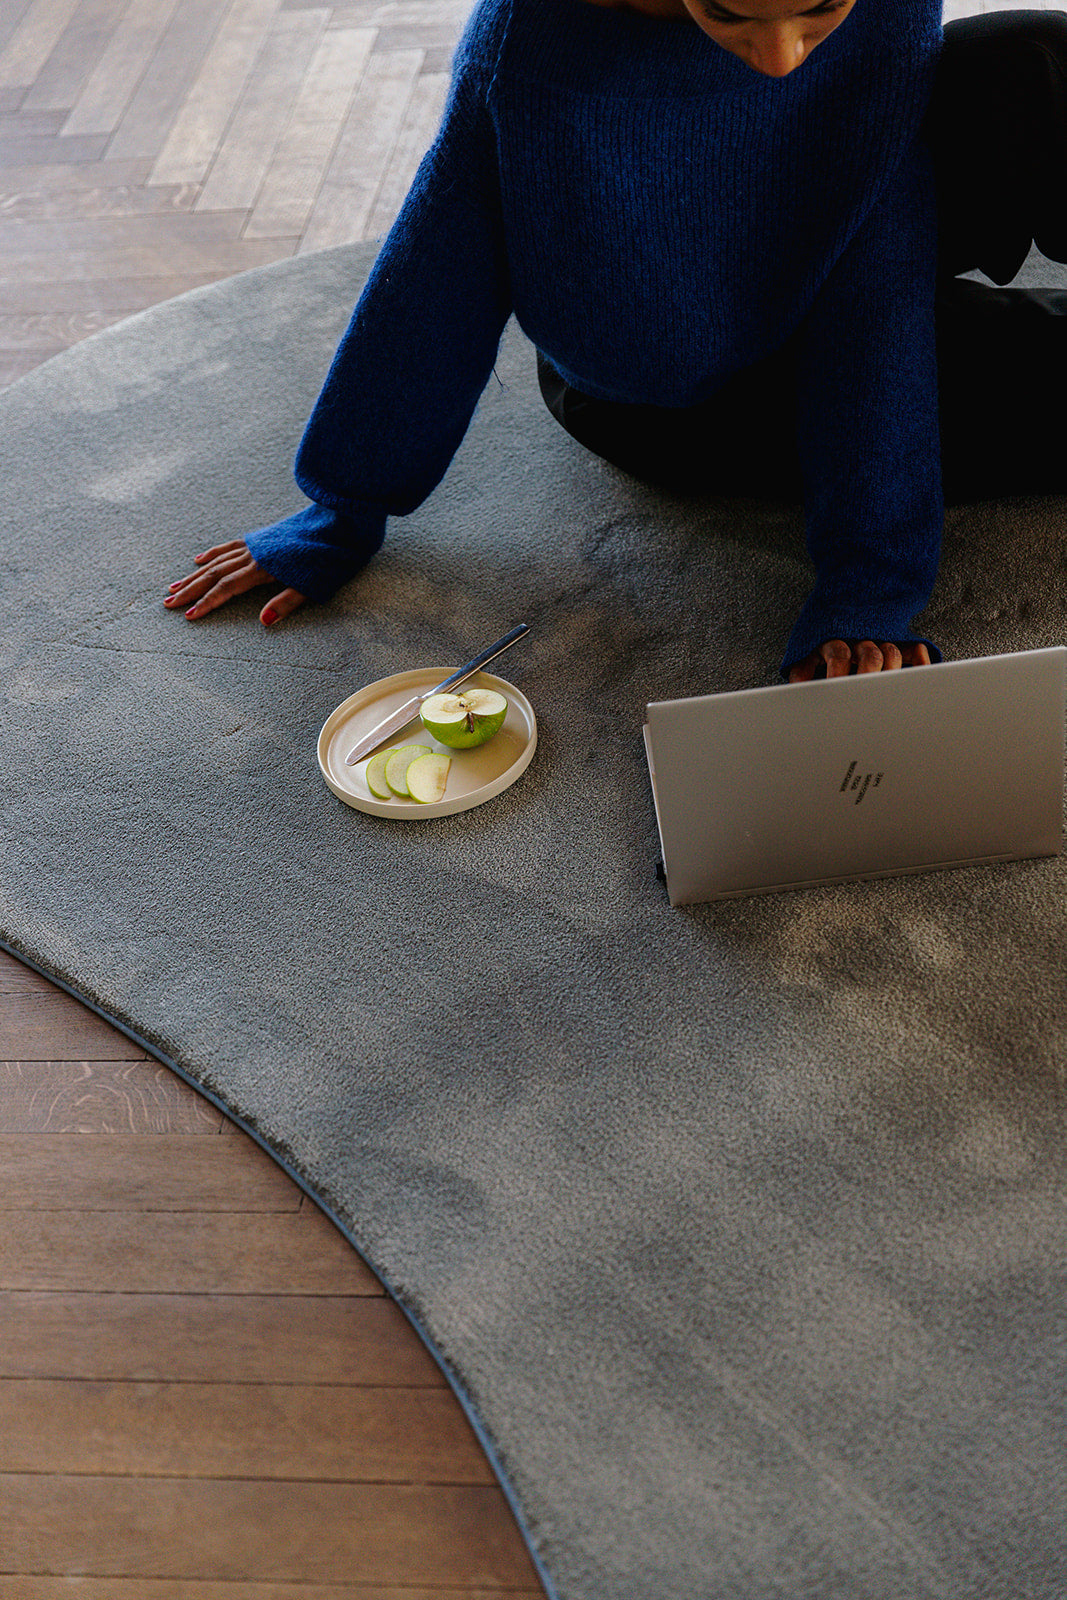 Vrouw zitten op organische vorm circulair tapijt met laptop en fruit.